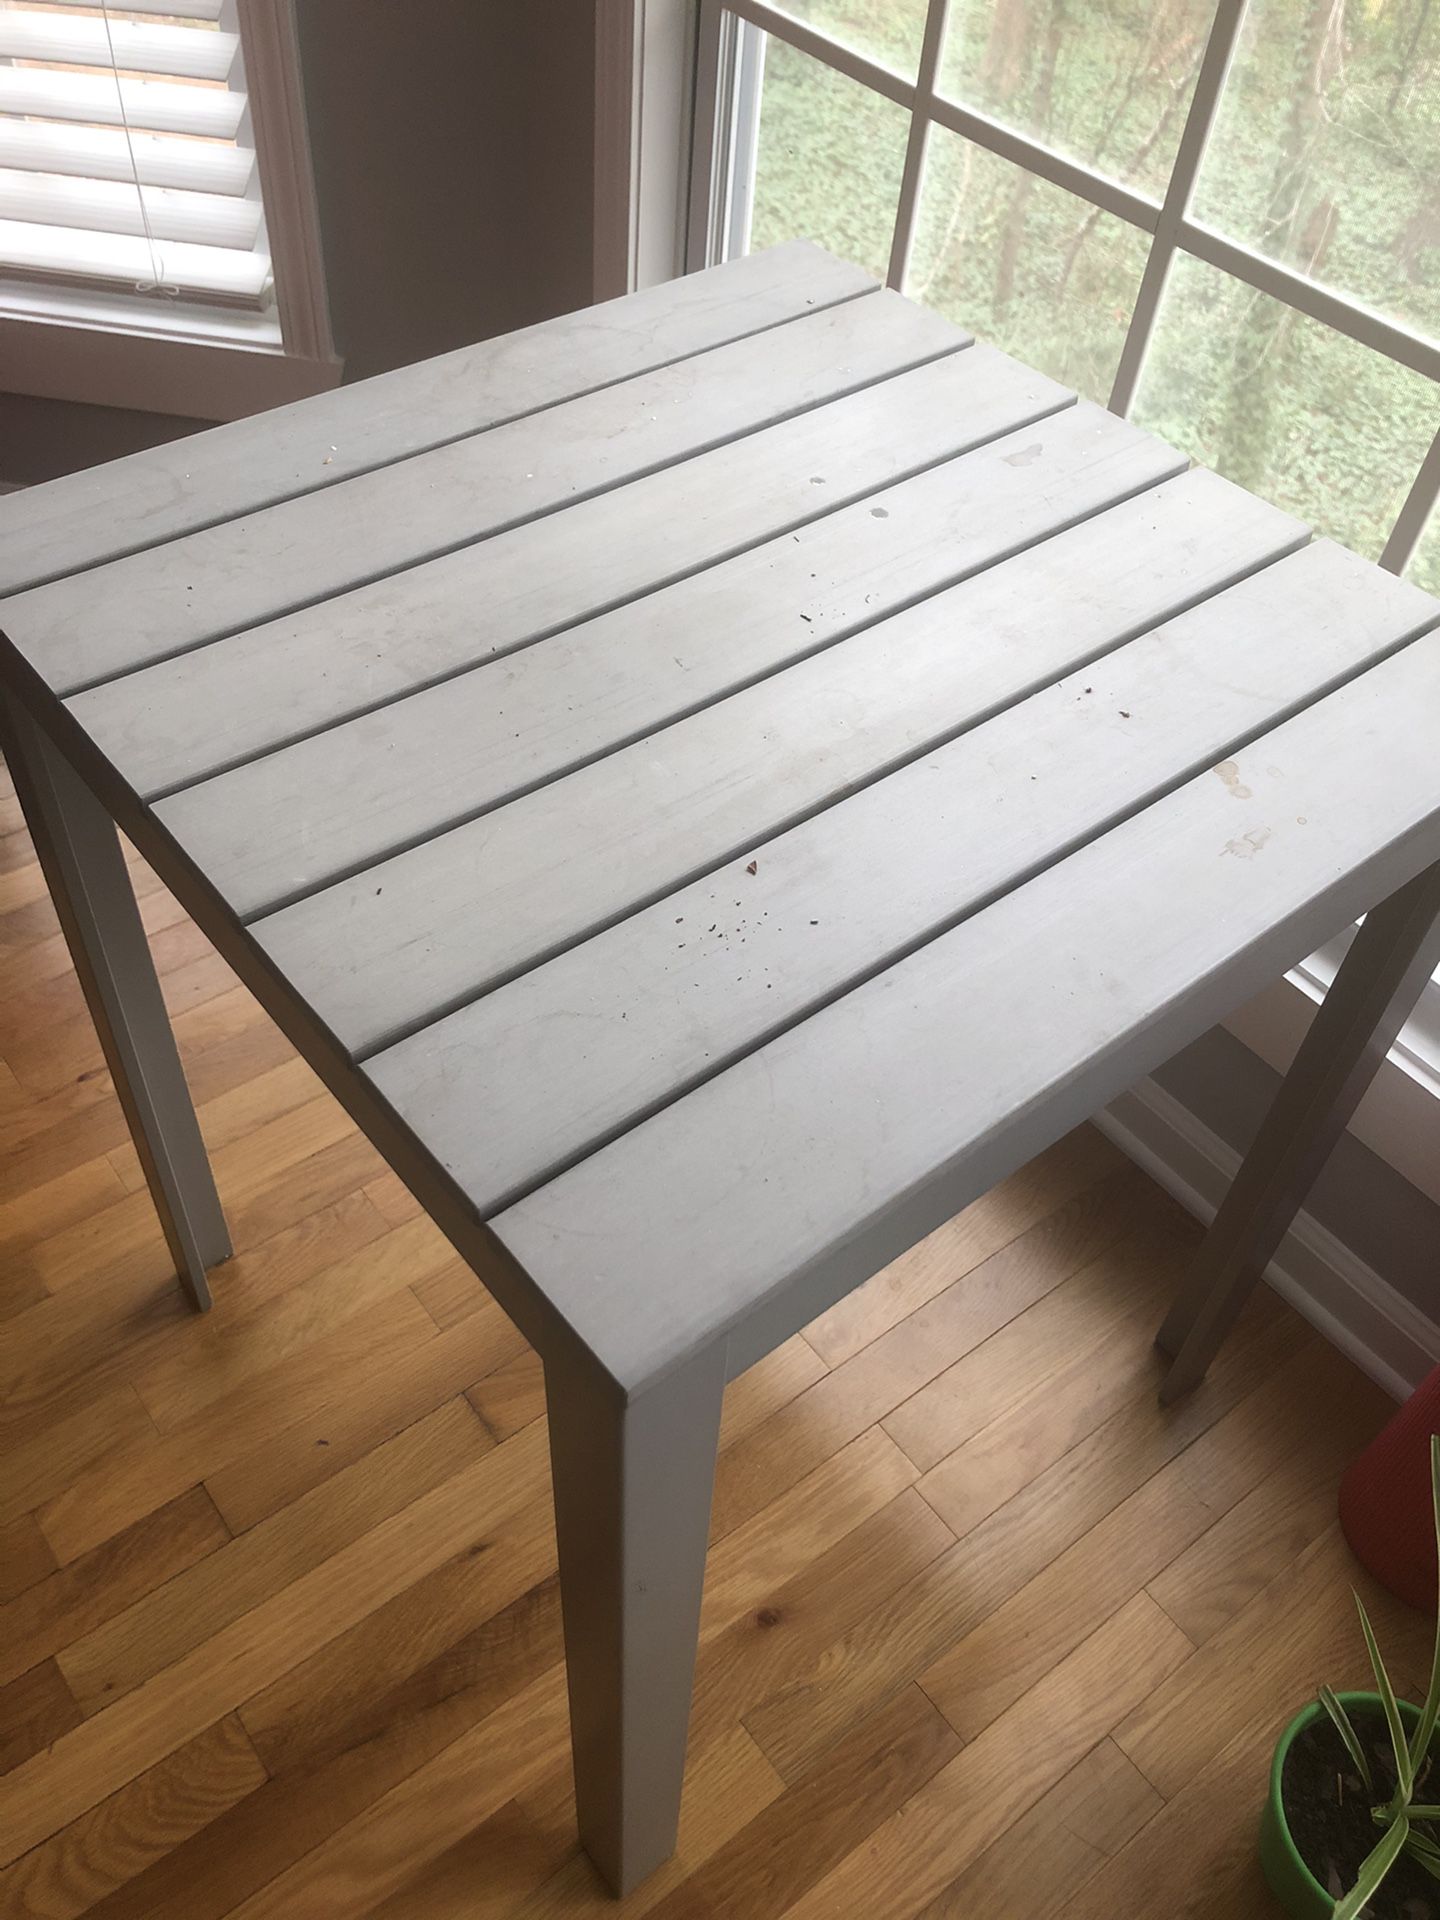 IKEA falster table